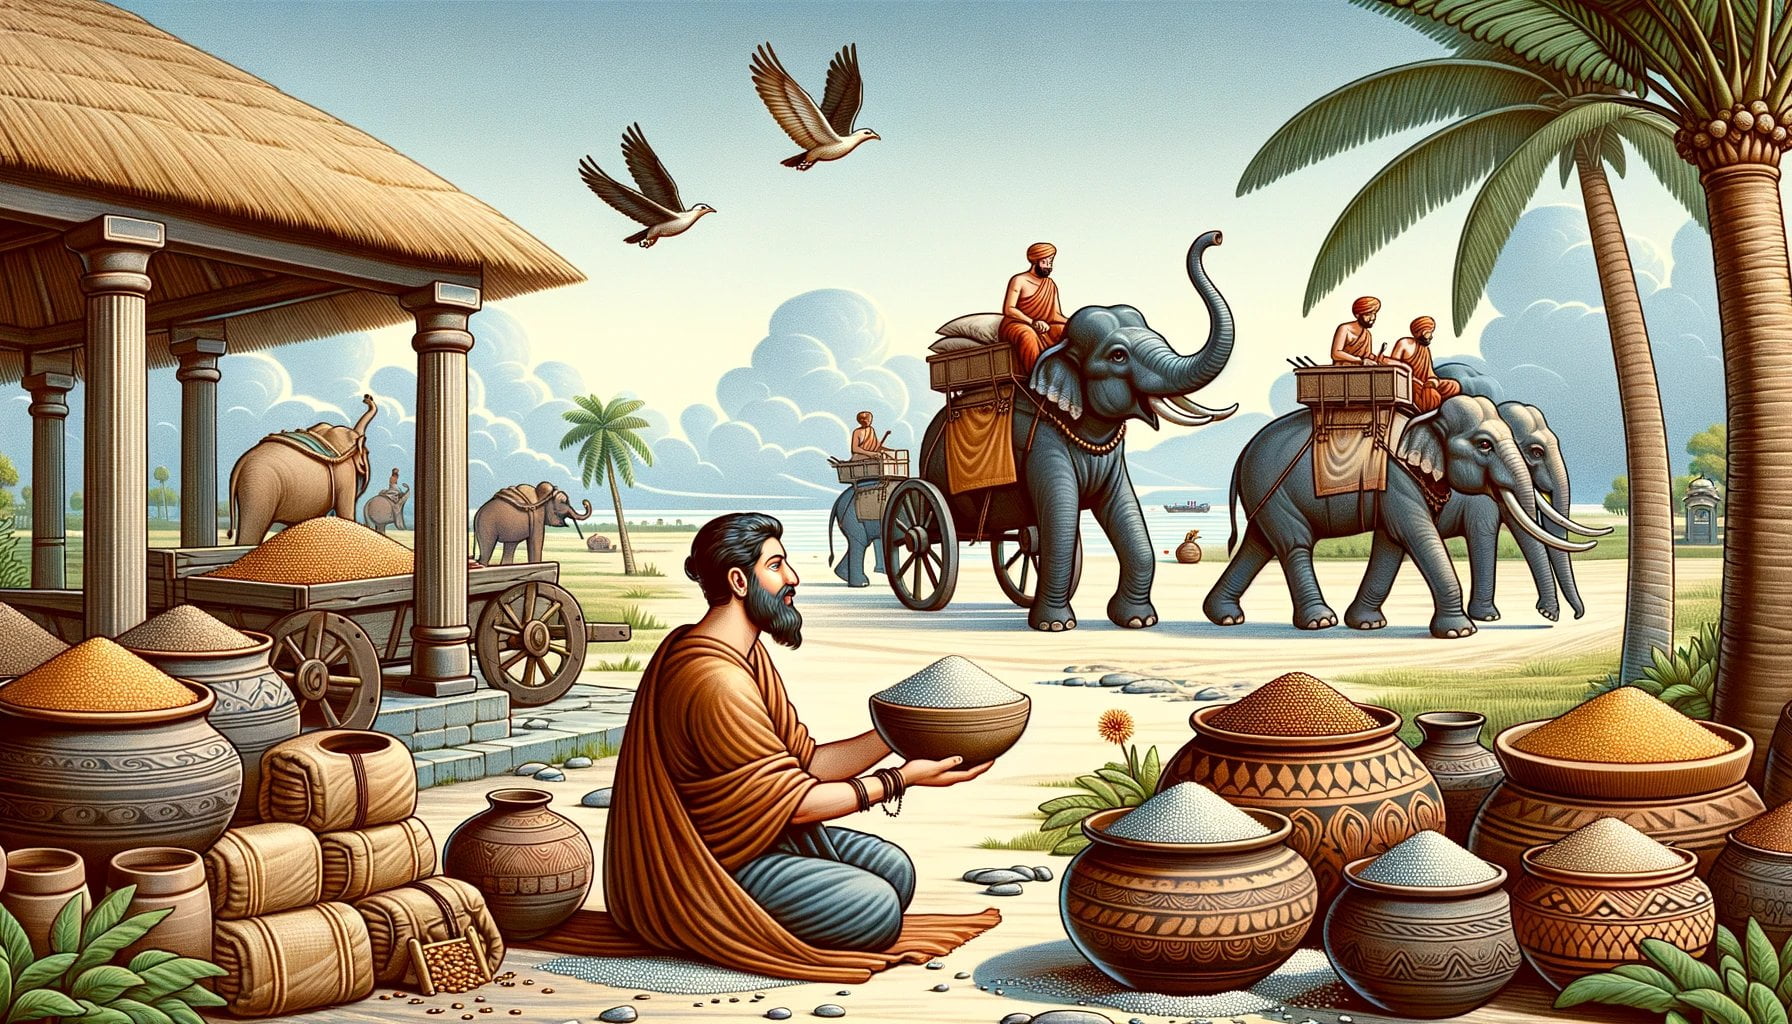 Economics in Ancient India